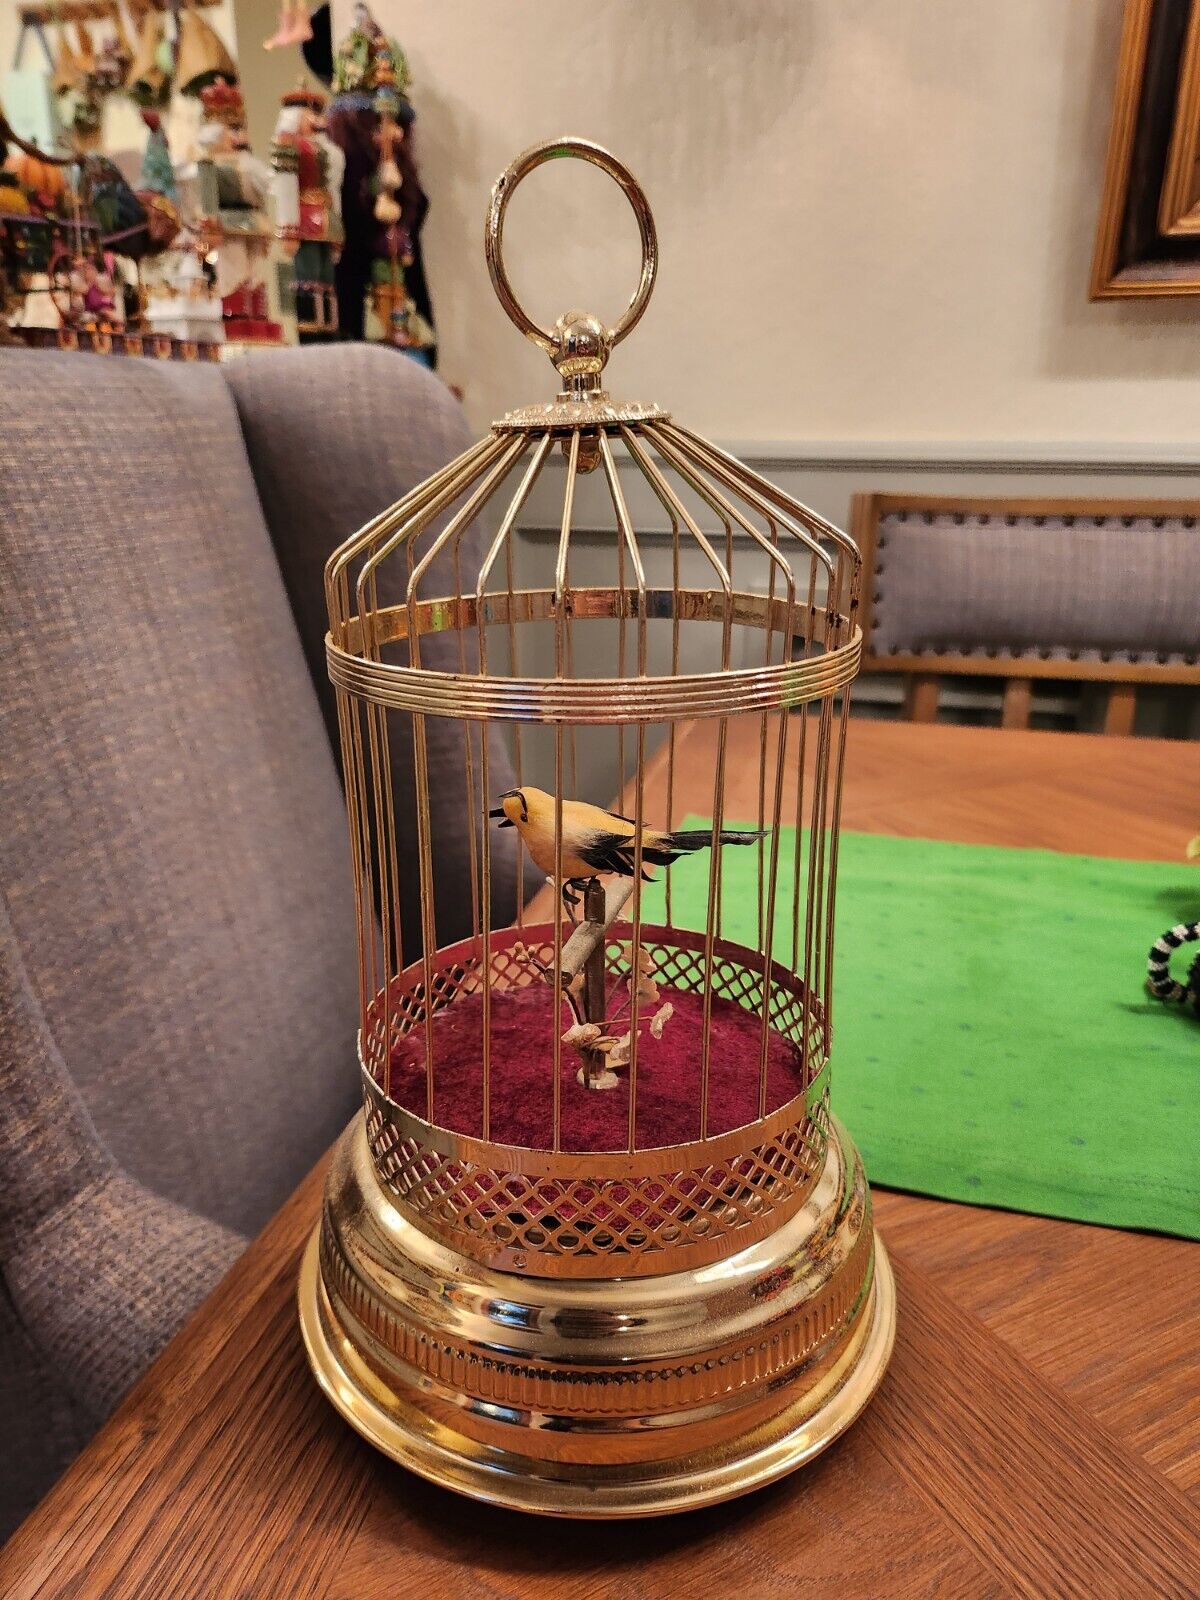 Vintage Singing Automation Bird In Birdcage